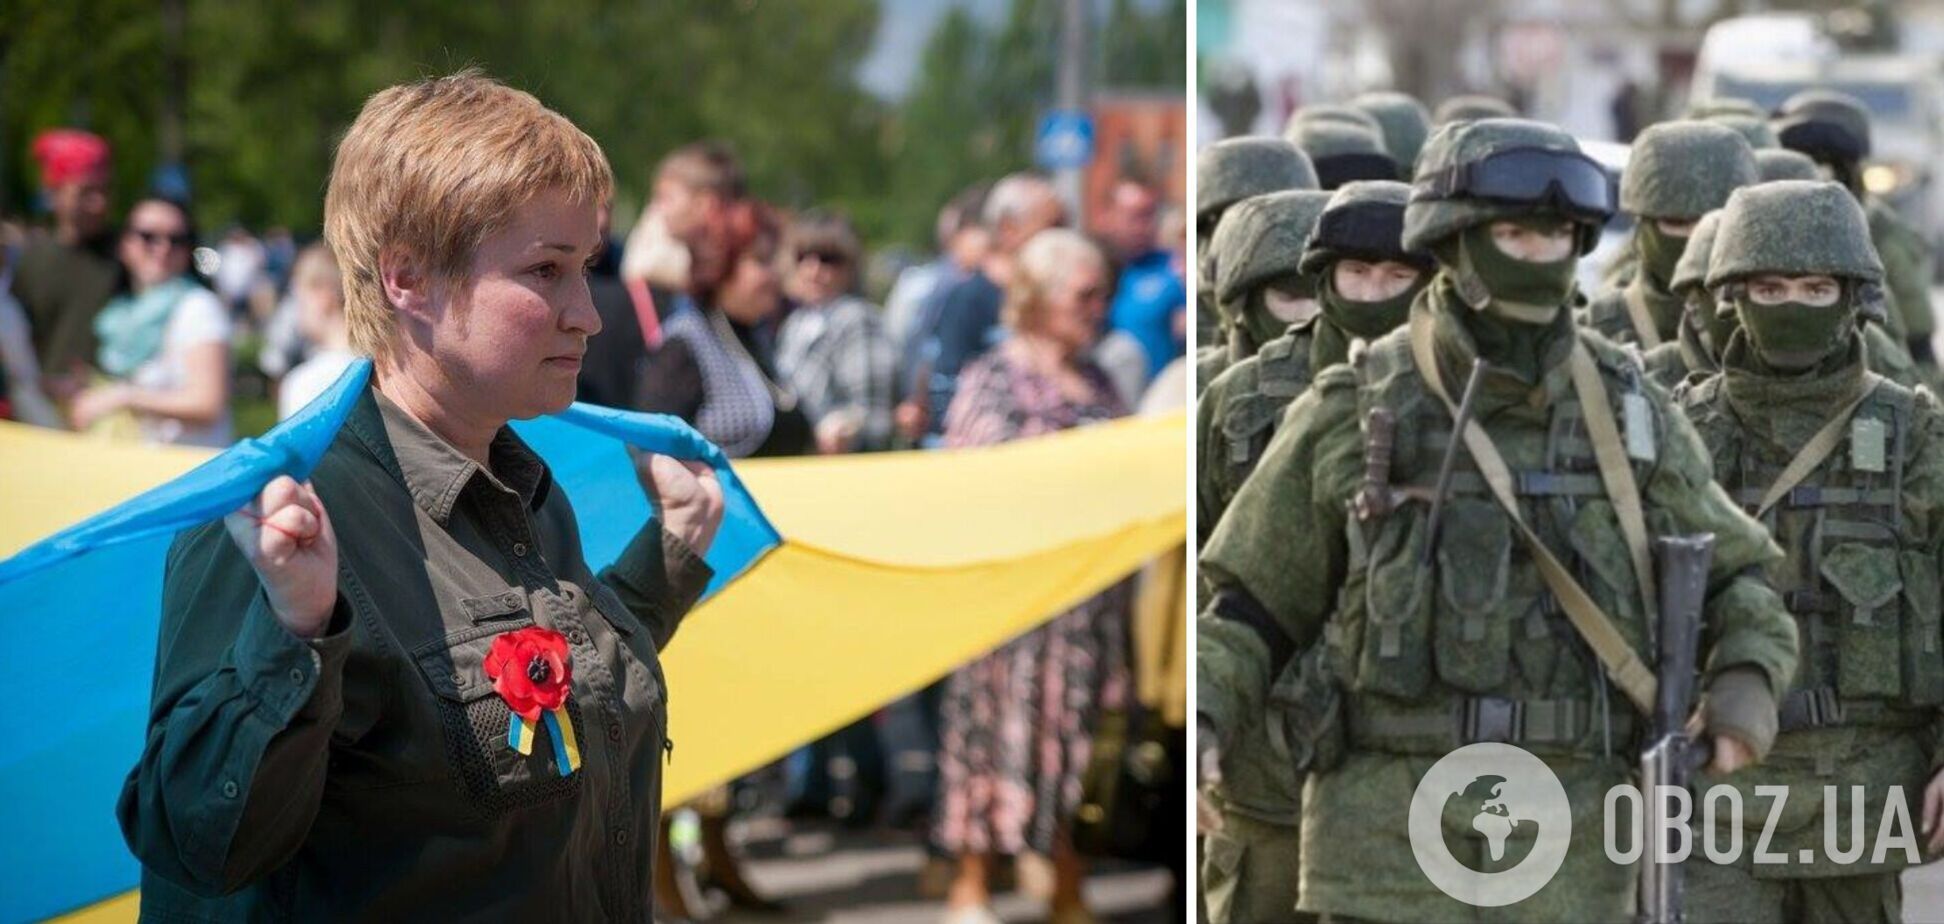 В Мелитополе оккупанты прямо с митинга похитили активистку, выступившую против РФ. Видео